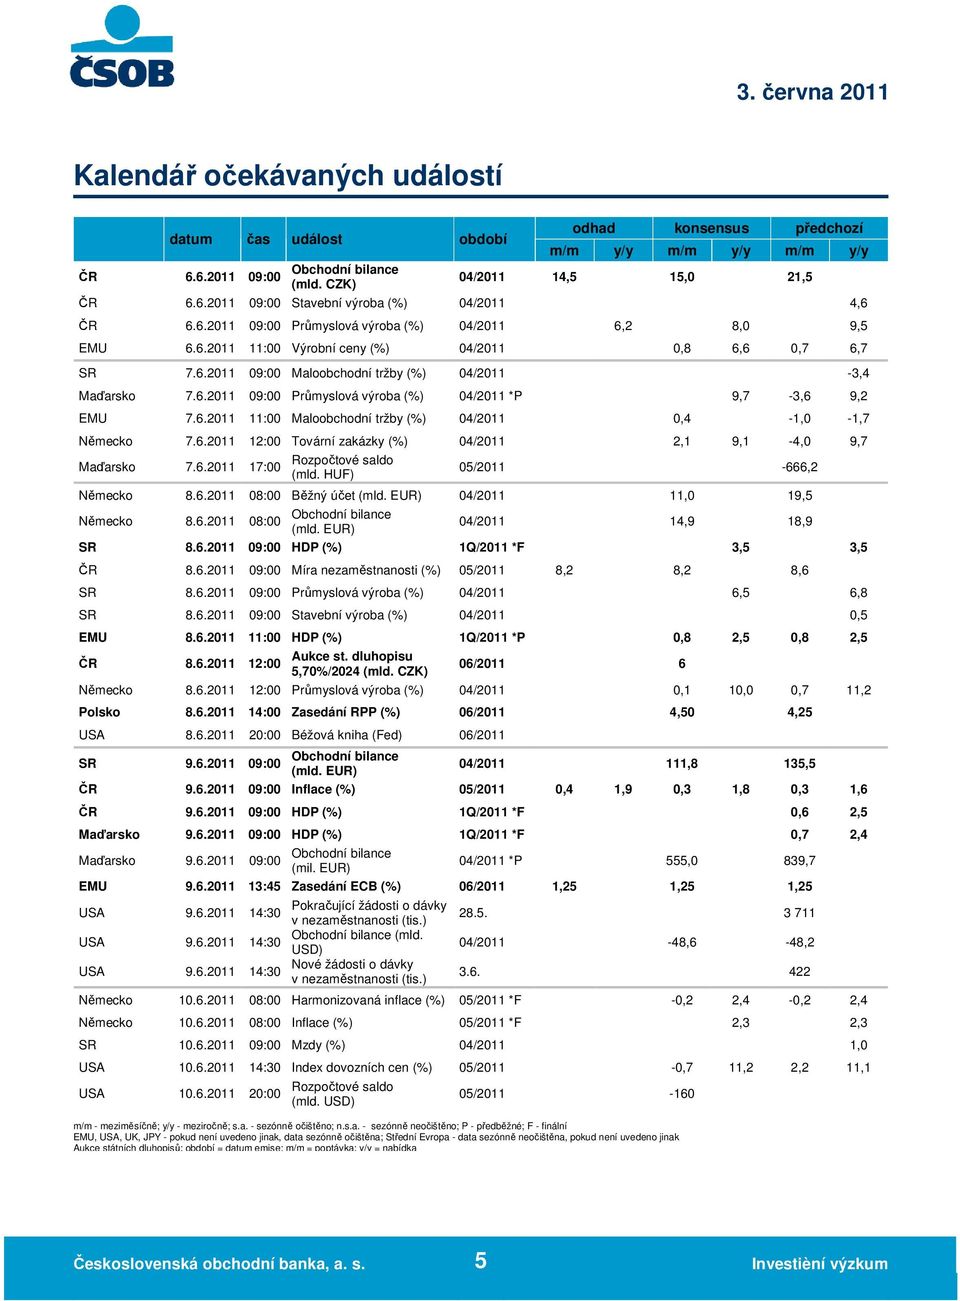 6.2011 11:00 Maloobchodní tržby (%) 04/2011 0,4-1,0-1,7 Německo 7.6.2011 12:00 Tovární zakázky (%) 04/2011 2,1 9,1-4,0 9,7 Maďarsko 7.6.2011 Rozpočtové saldo 17:00 (mld. HUF) 05/2011-666,2 Německo 8.